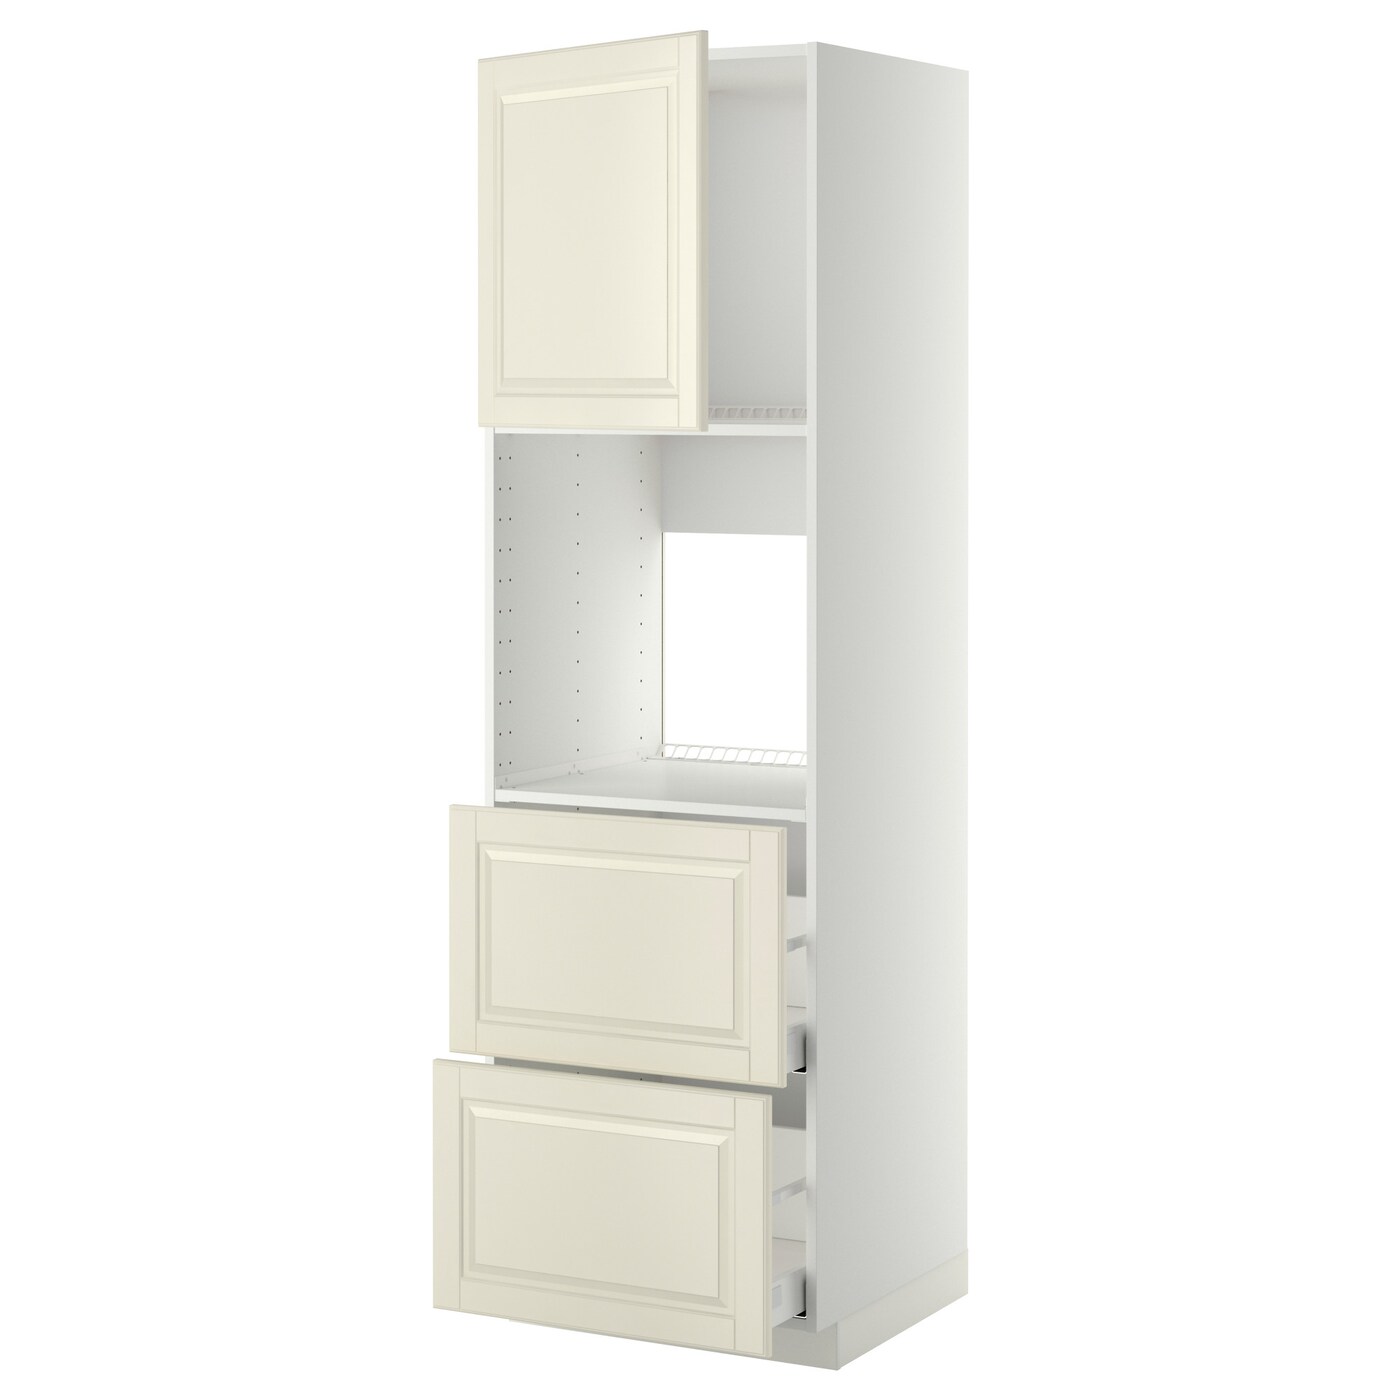 Модульный шкаф - METOD / MAXIMERA IKEA/ МЕТОД/МАКСИМЕРА  ИКЕА, 208х60 см, бежевый